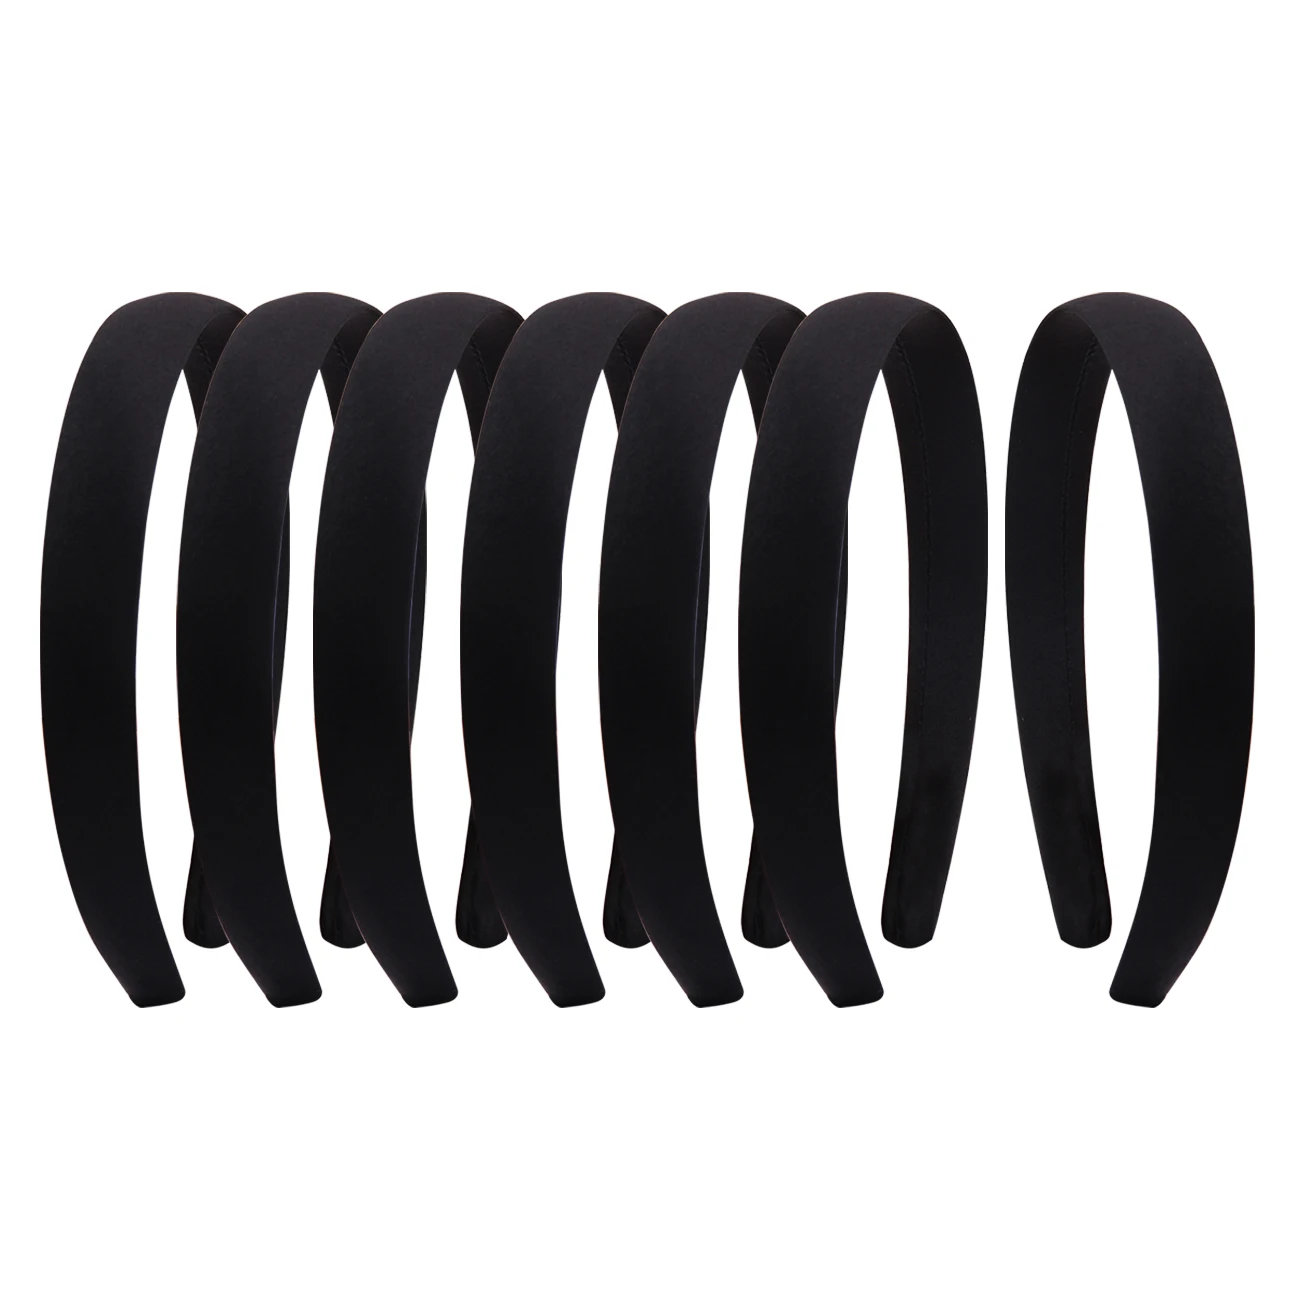 

10pcs Headbands Black White 2cm Wide Grace Padded Velvet Hair Band Like Headband Solid Hair Band For Women And Girls